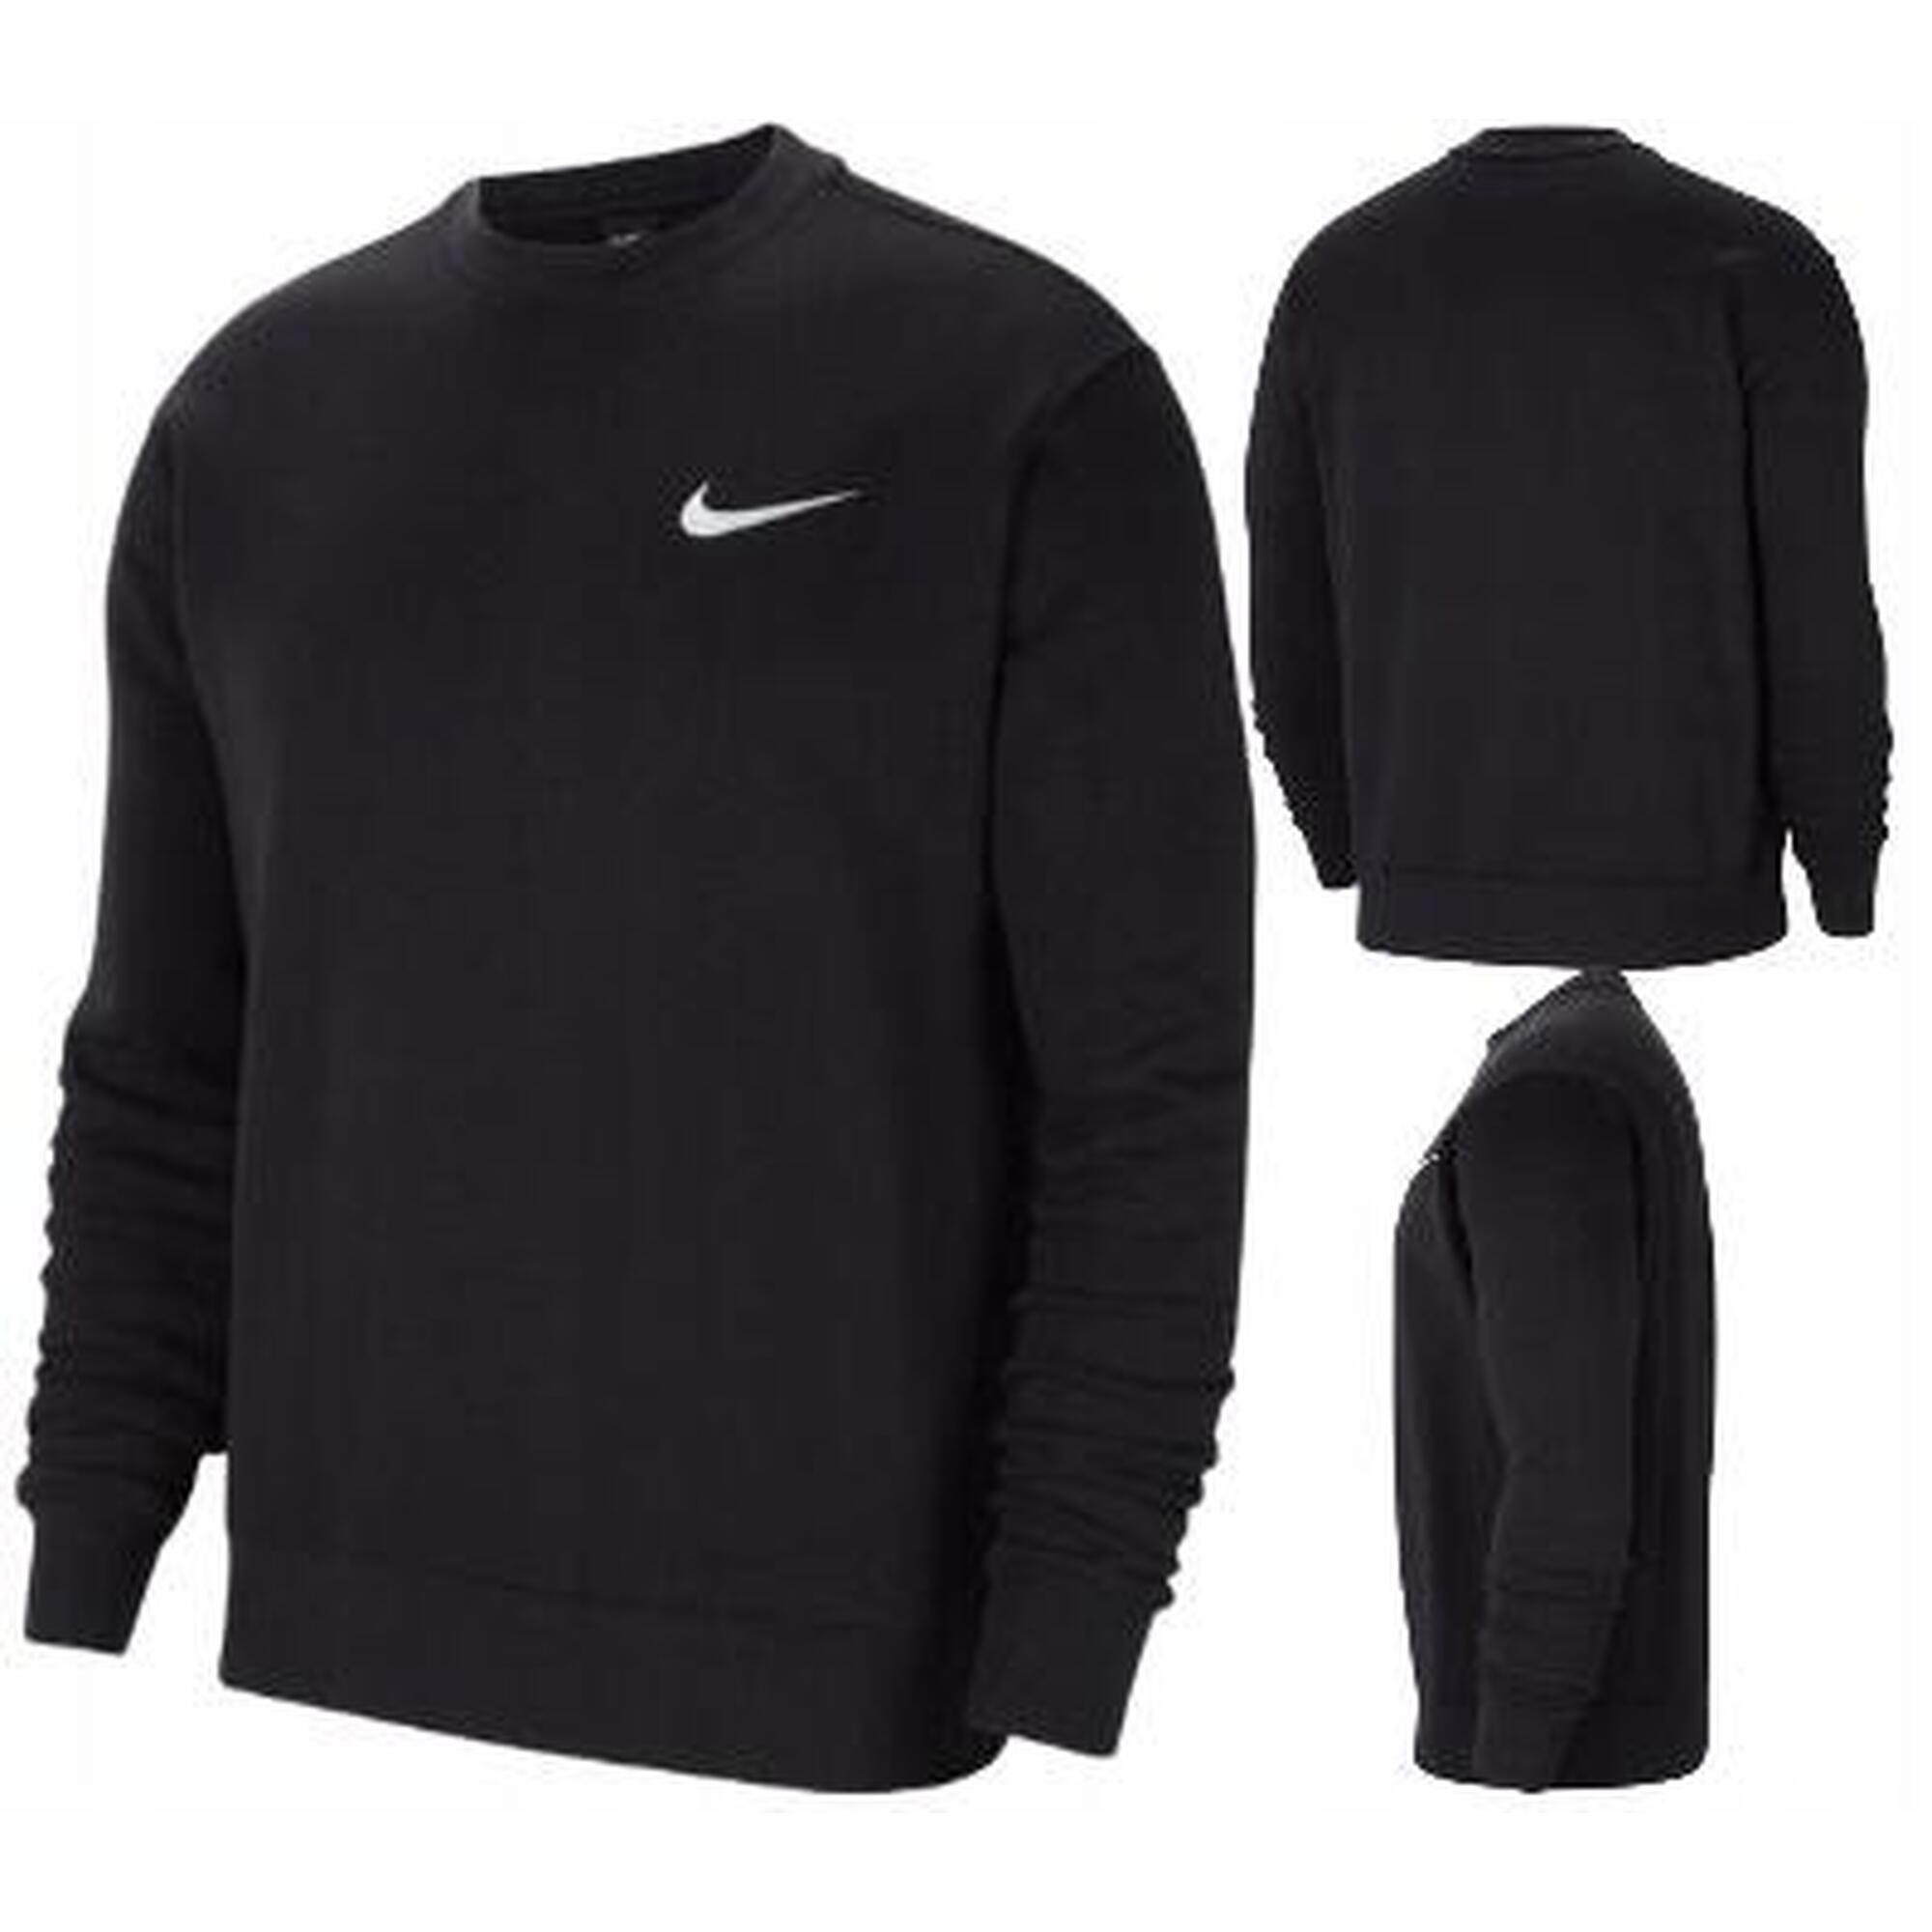 Bluza do piłki nożnej męska Nike Park 20 Fleece Crew